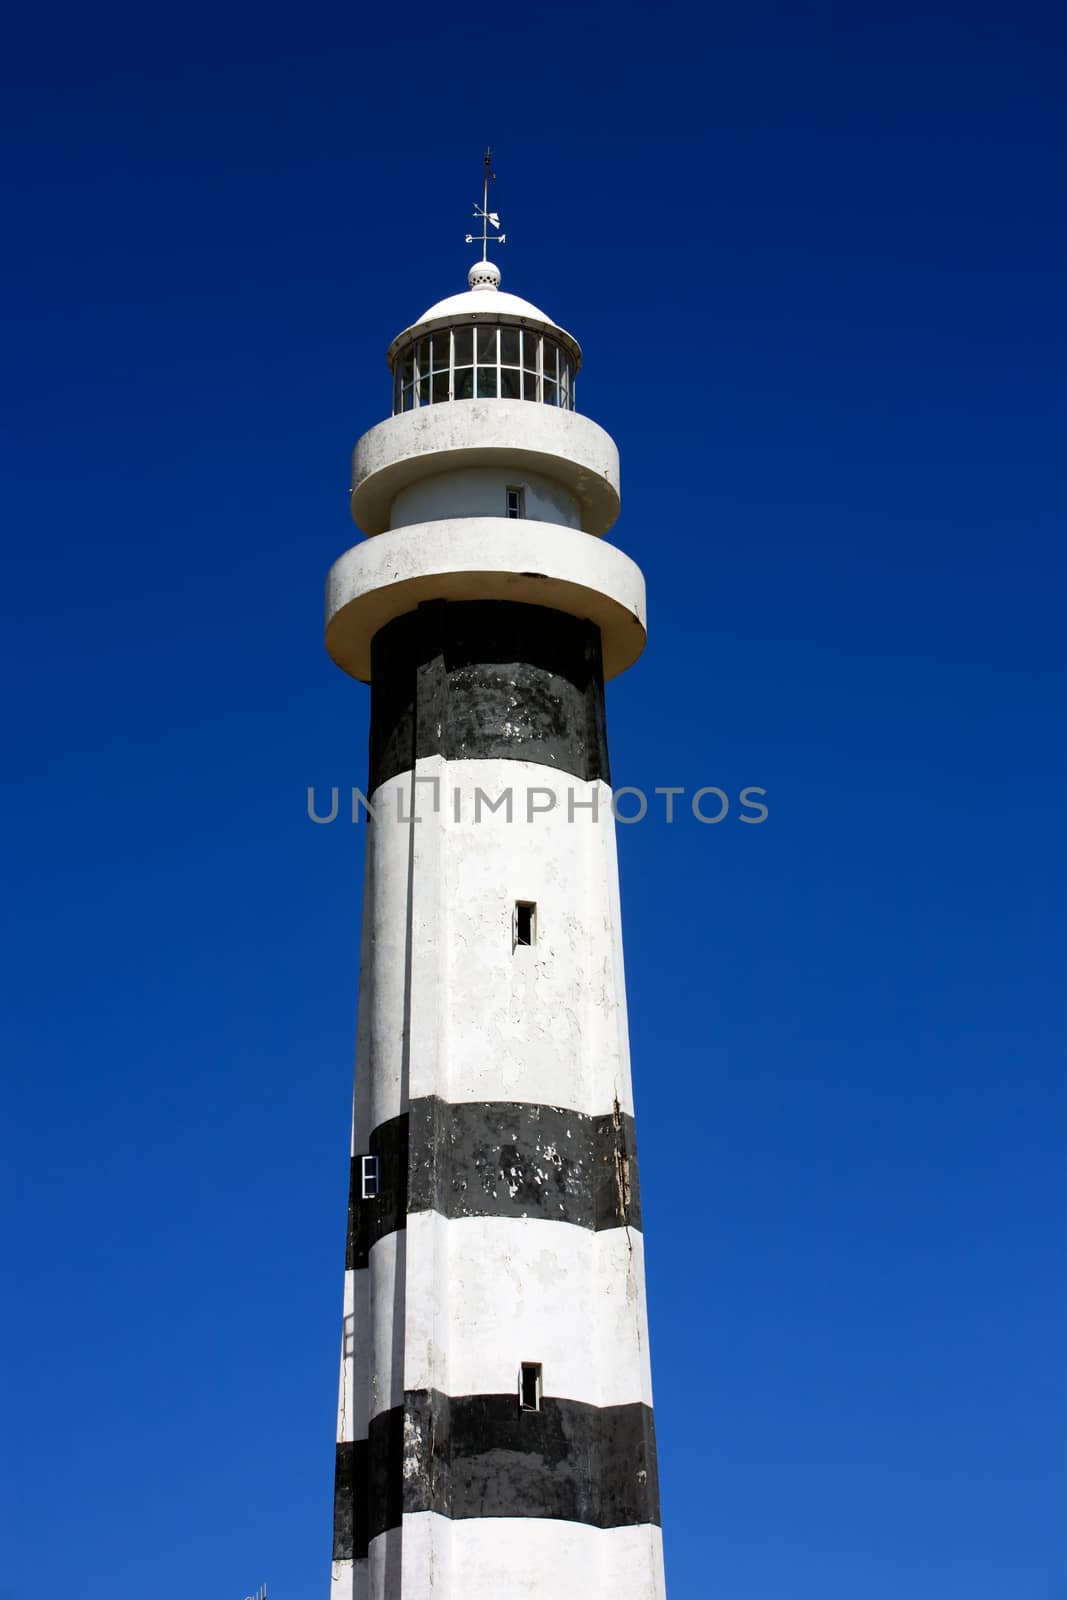 cabure head lighthouse in the Lencois Maranheses National Park